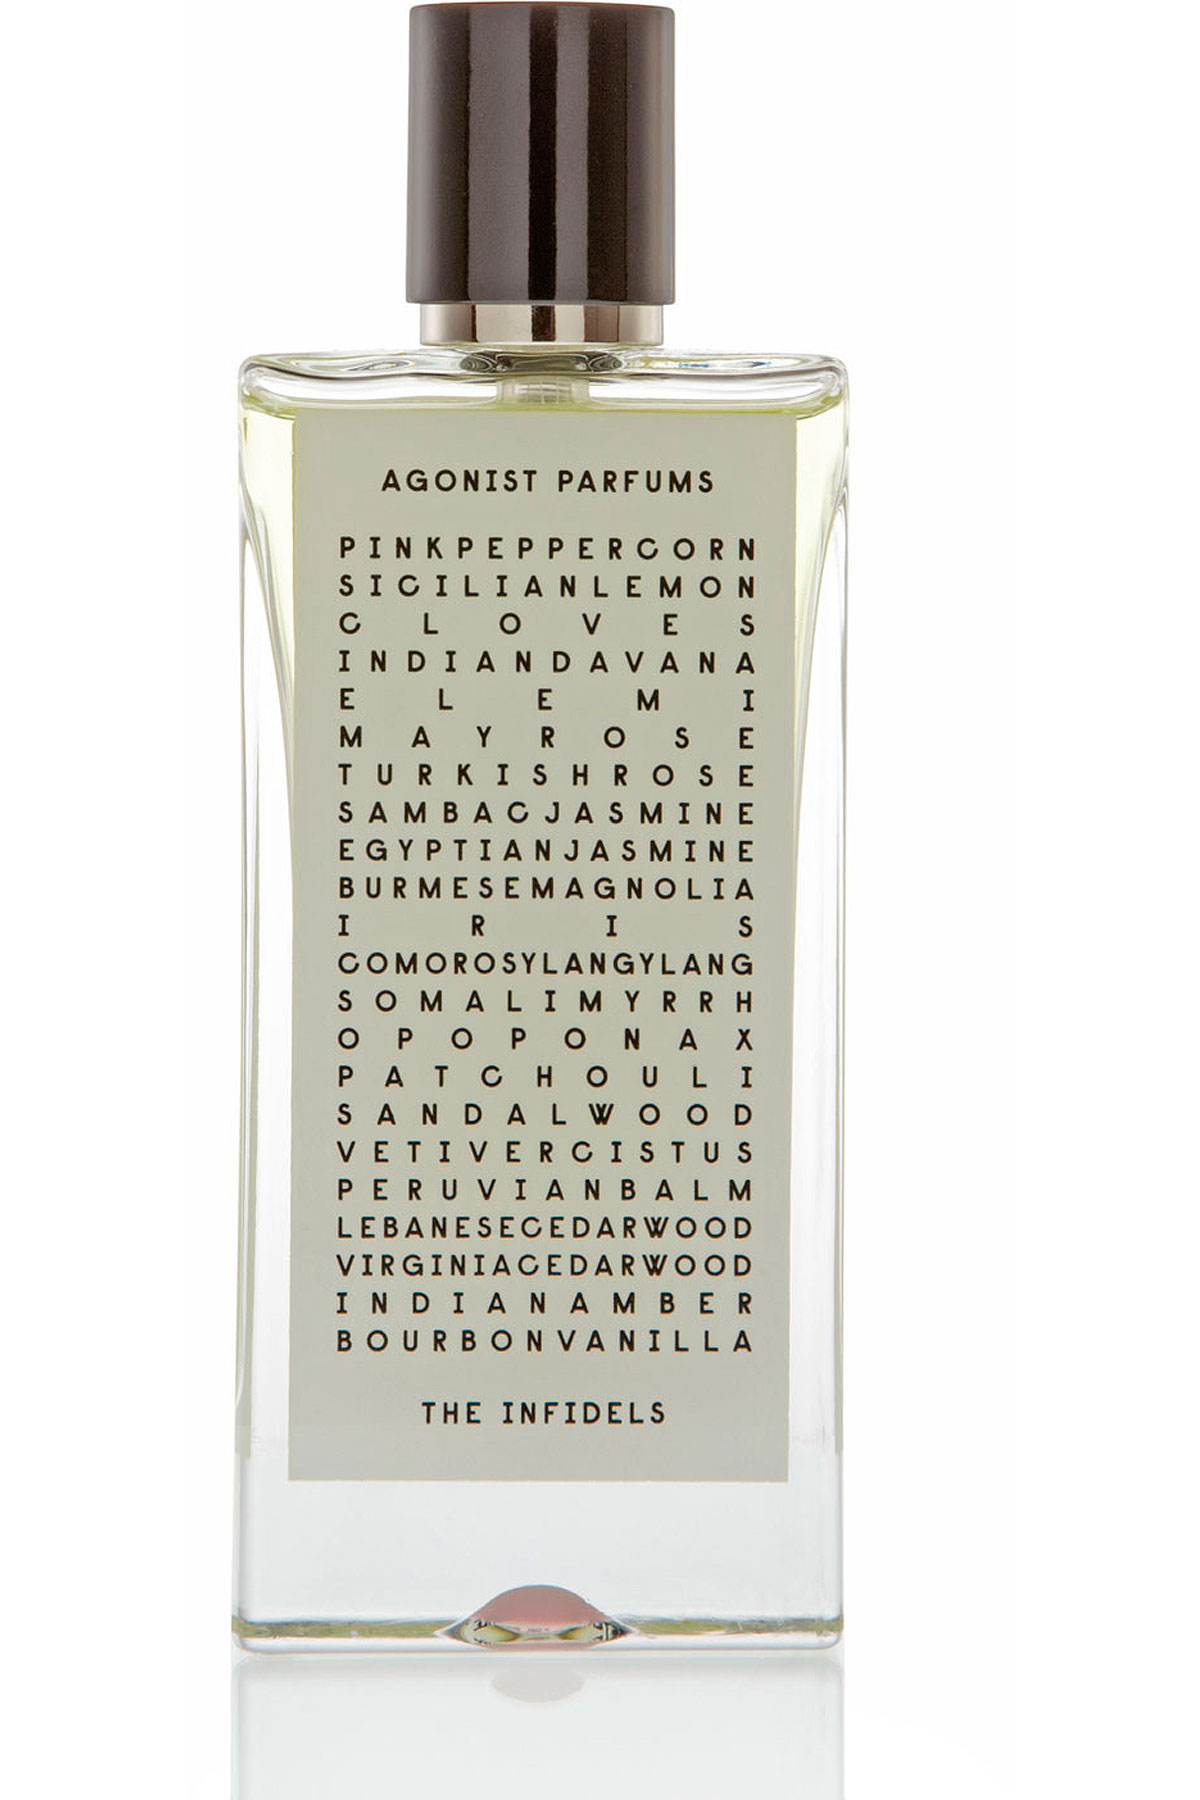 THE INFIDELS - EAU DE PARFUM - 50 ML, Womens Fragrances Agonist, Style